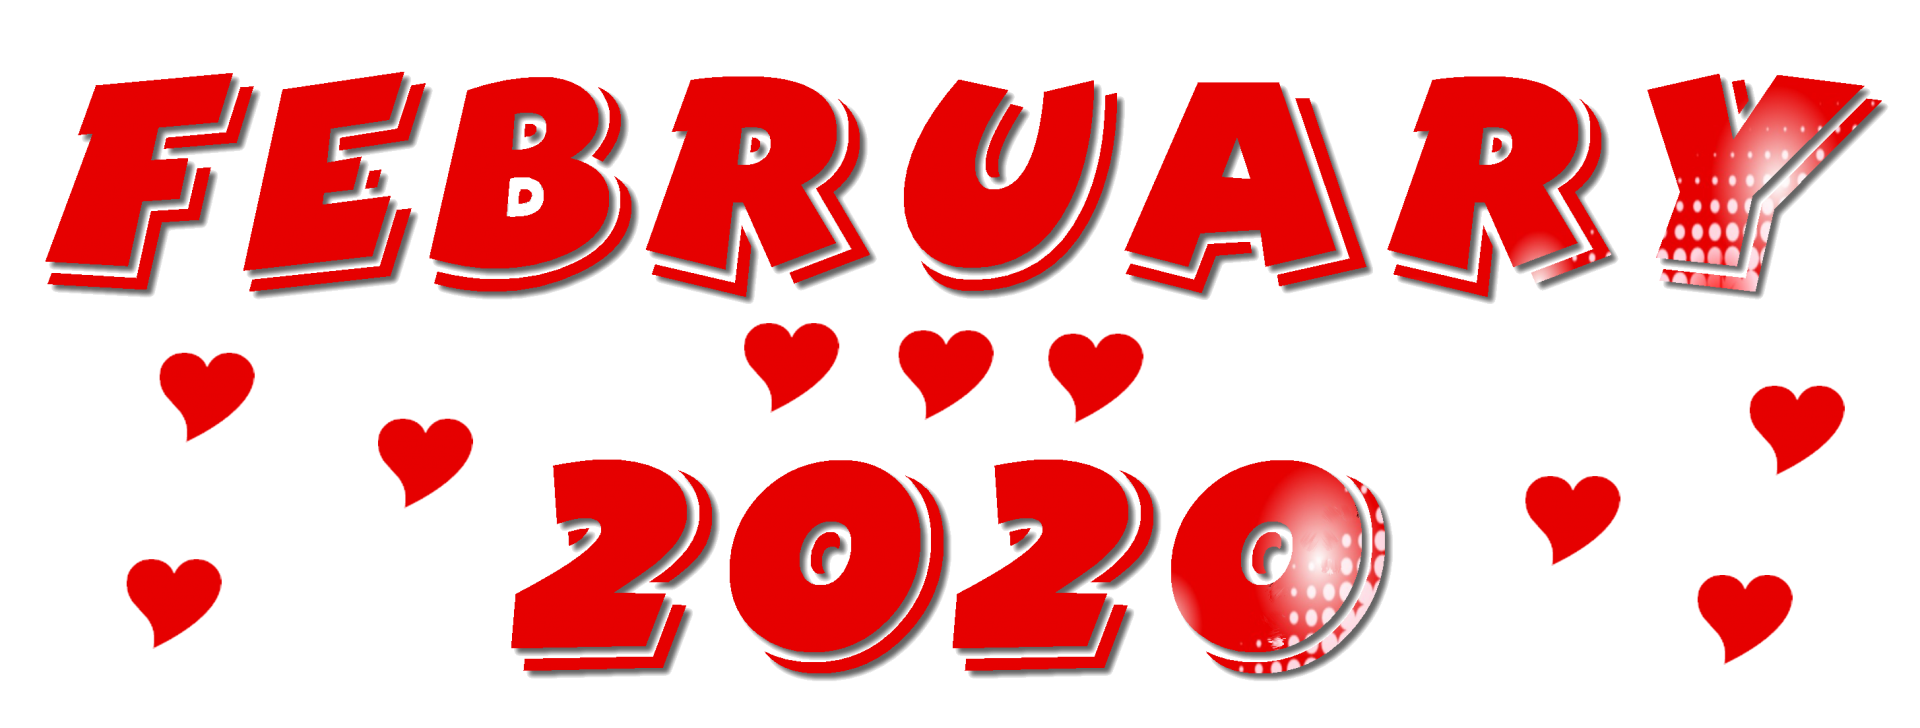 February 2020 - 1